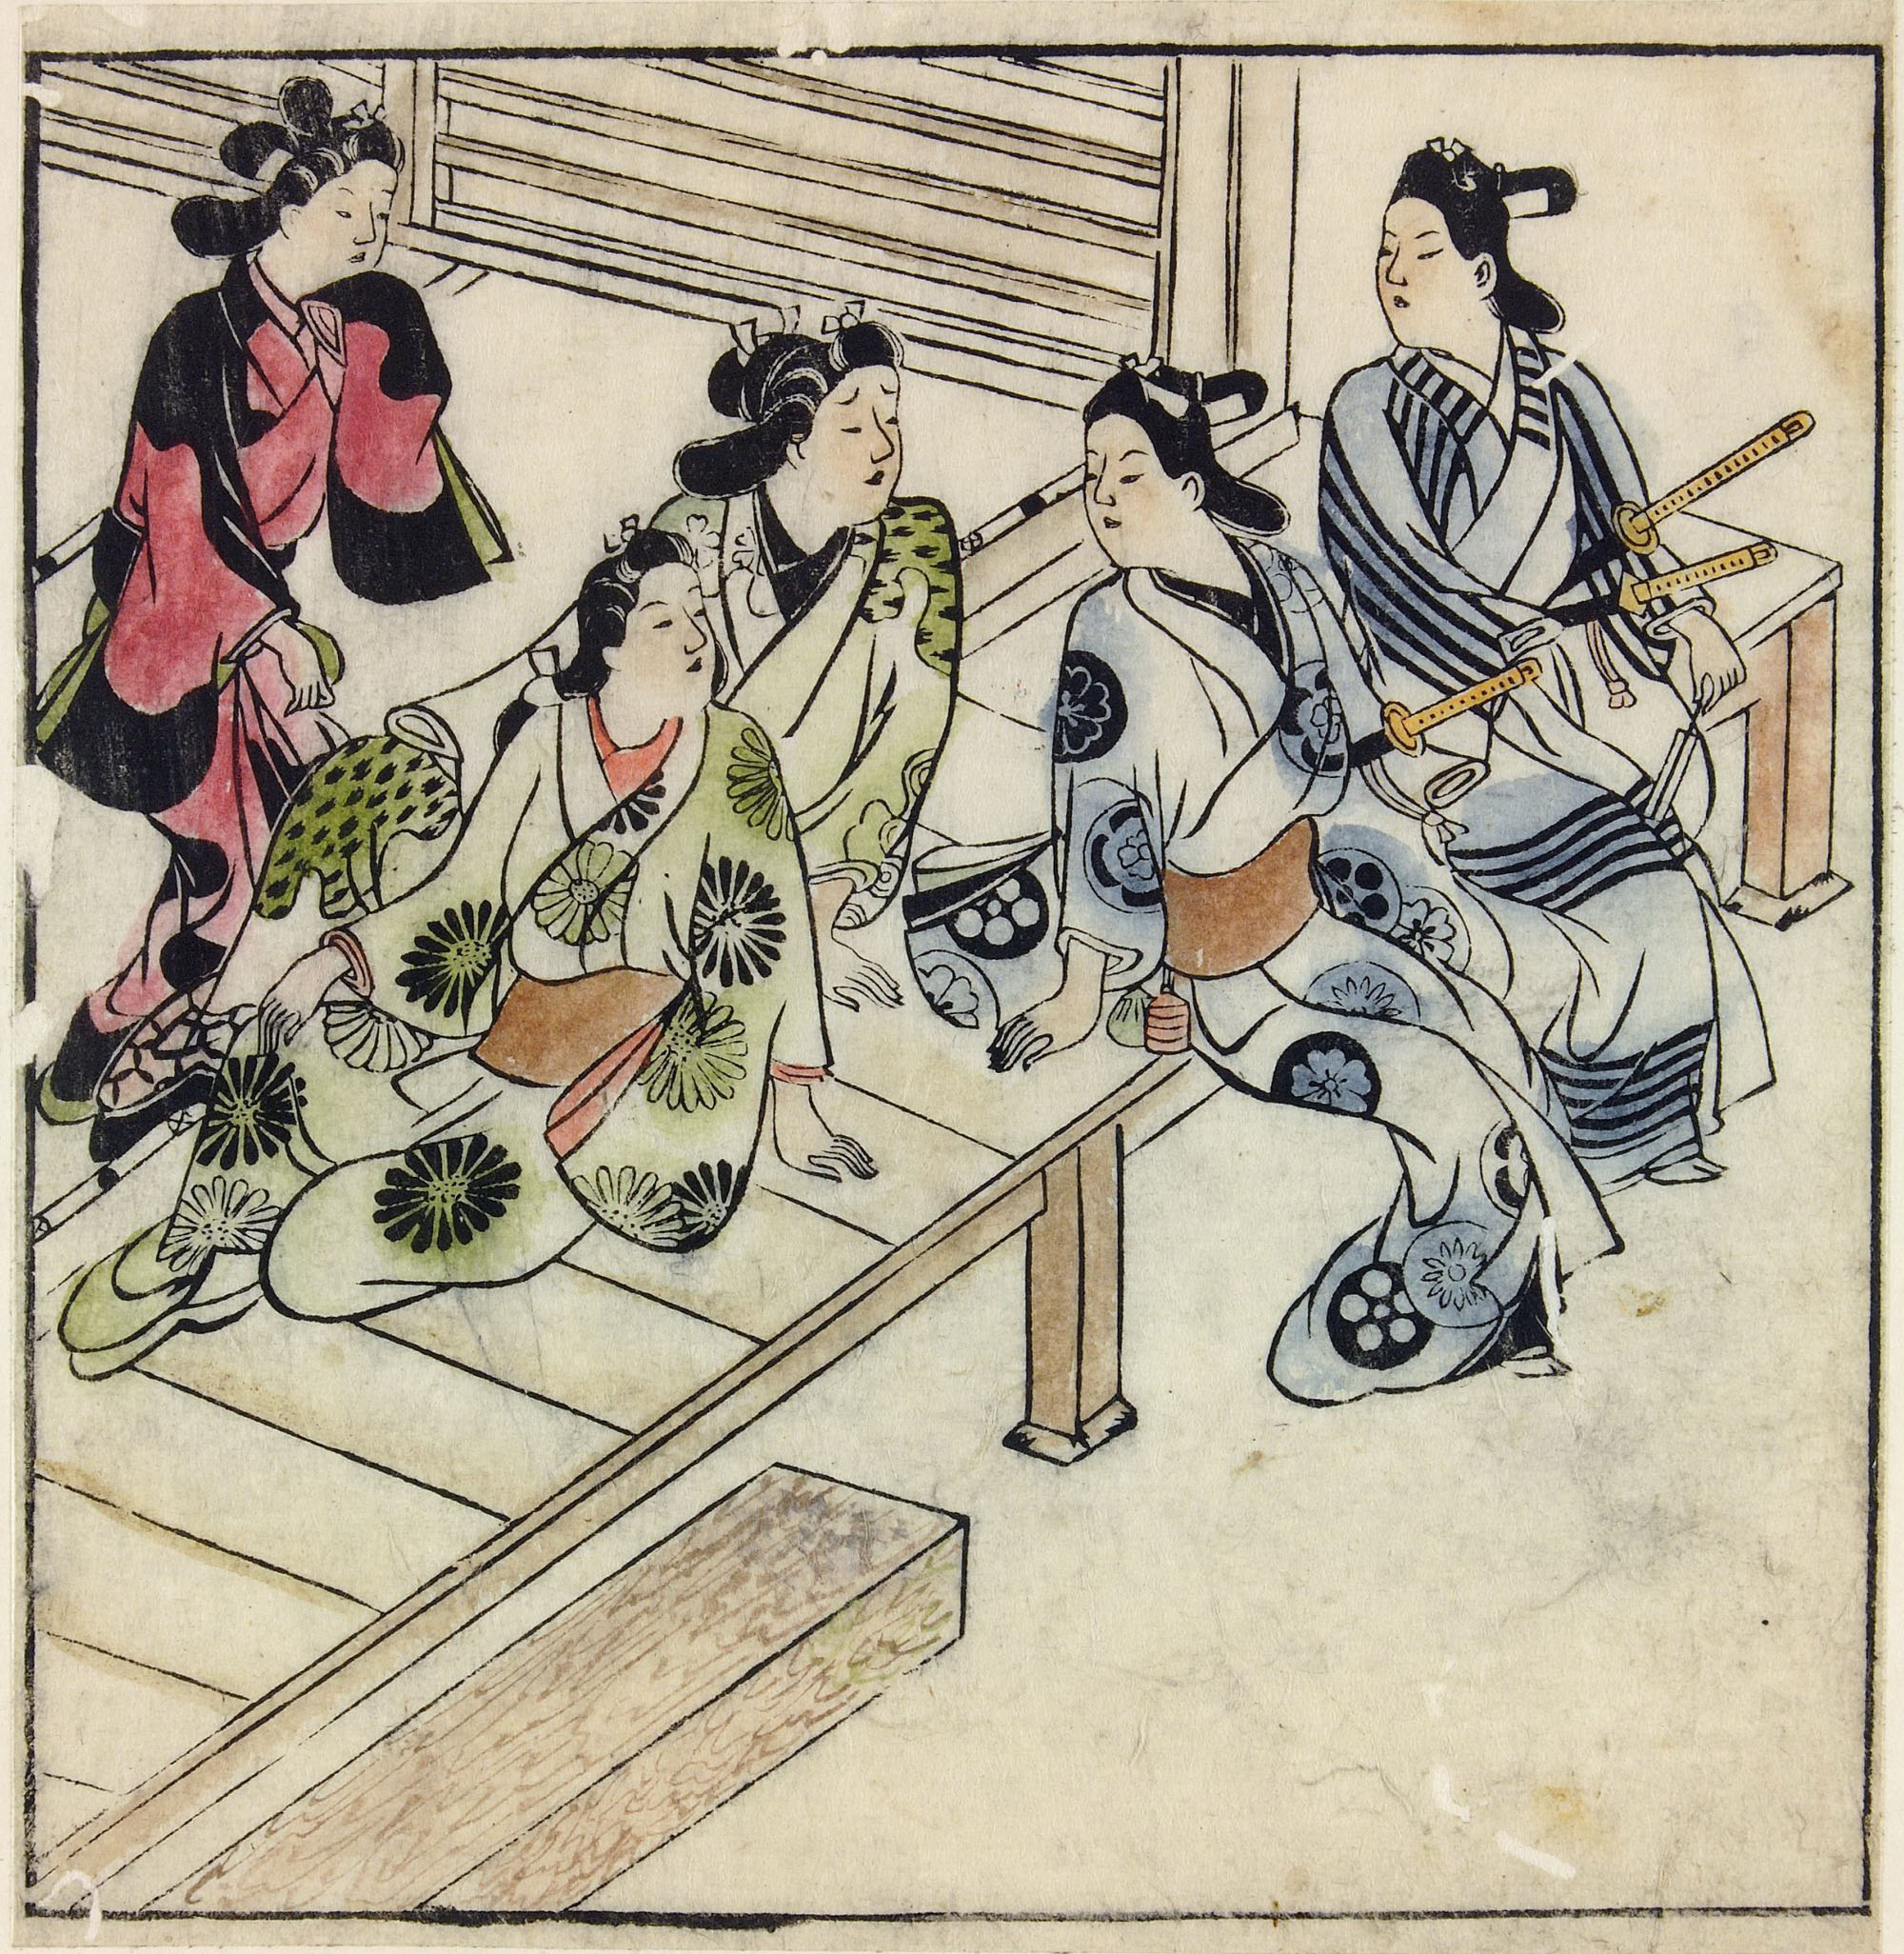 Моронобу Хисикава. "Двое молодых людей на веранде дома развлечений с тремя женщинами". 1683.